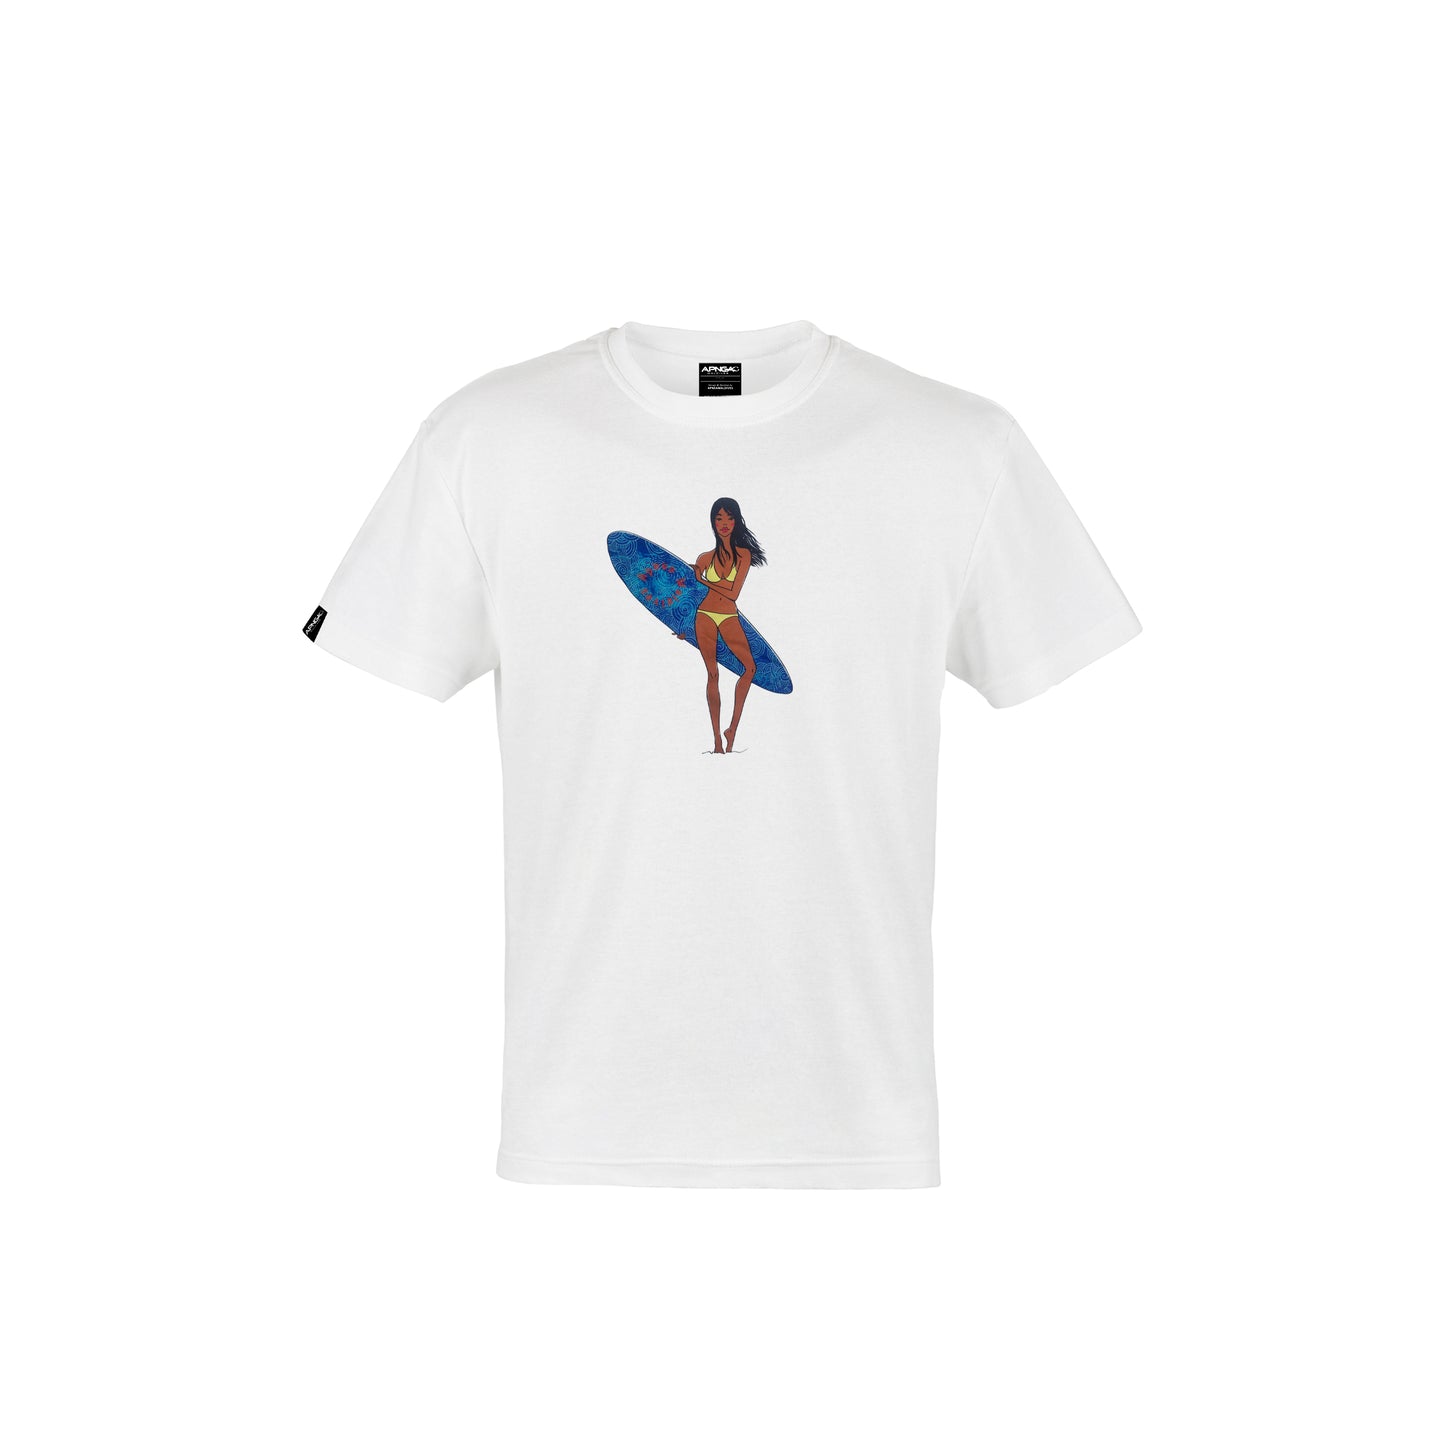 Apnea Premium T-Shirt,Shore chic